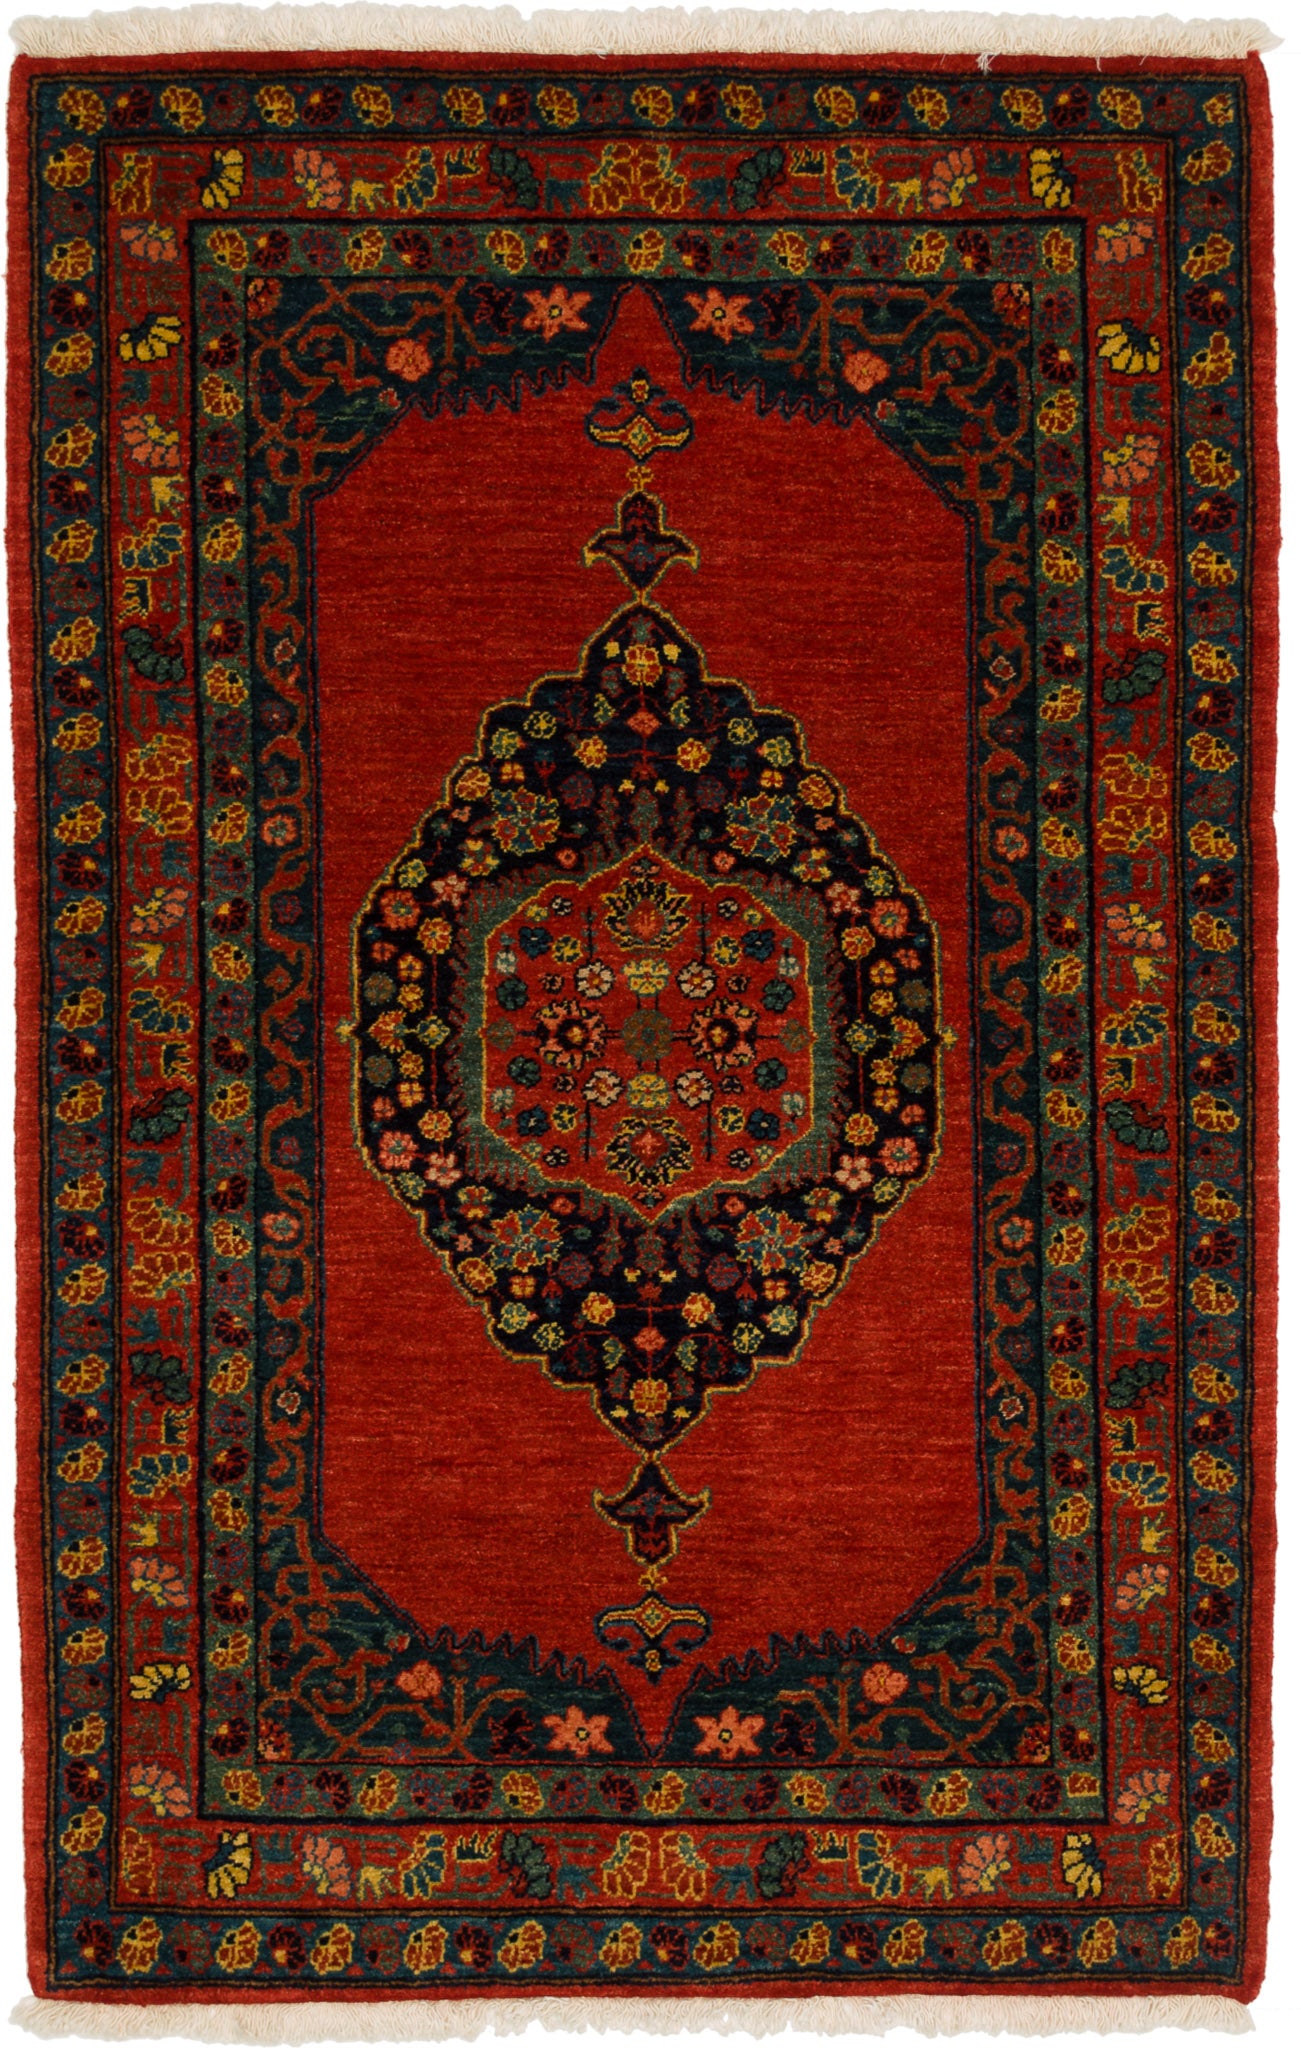 Bidjar Mirzai, 145 × 96 cm